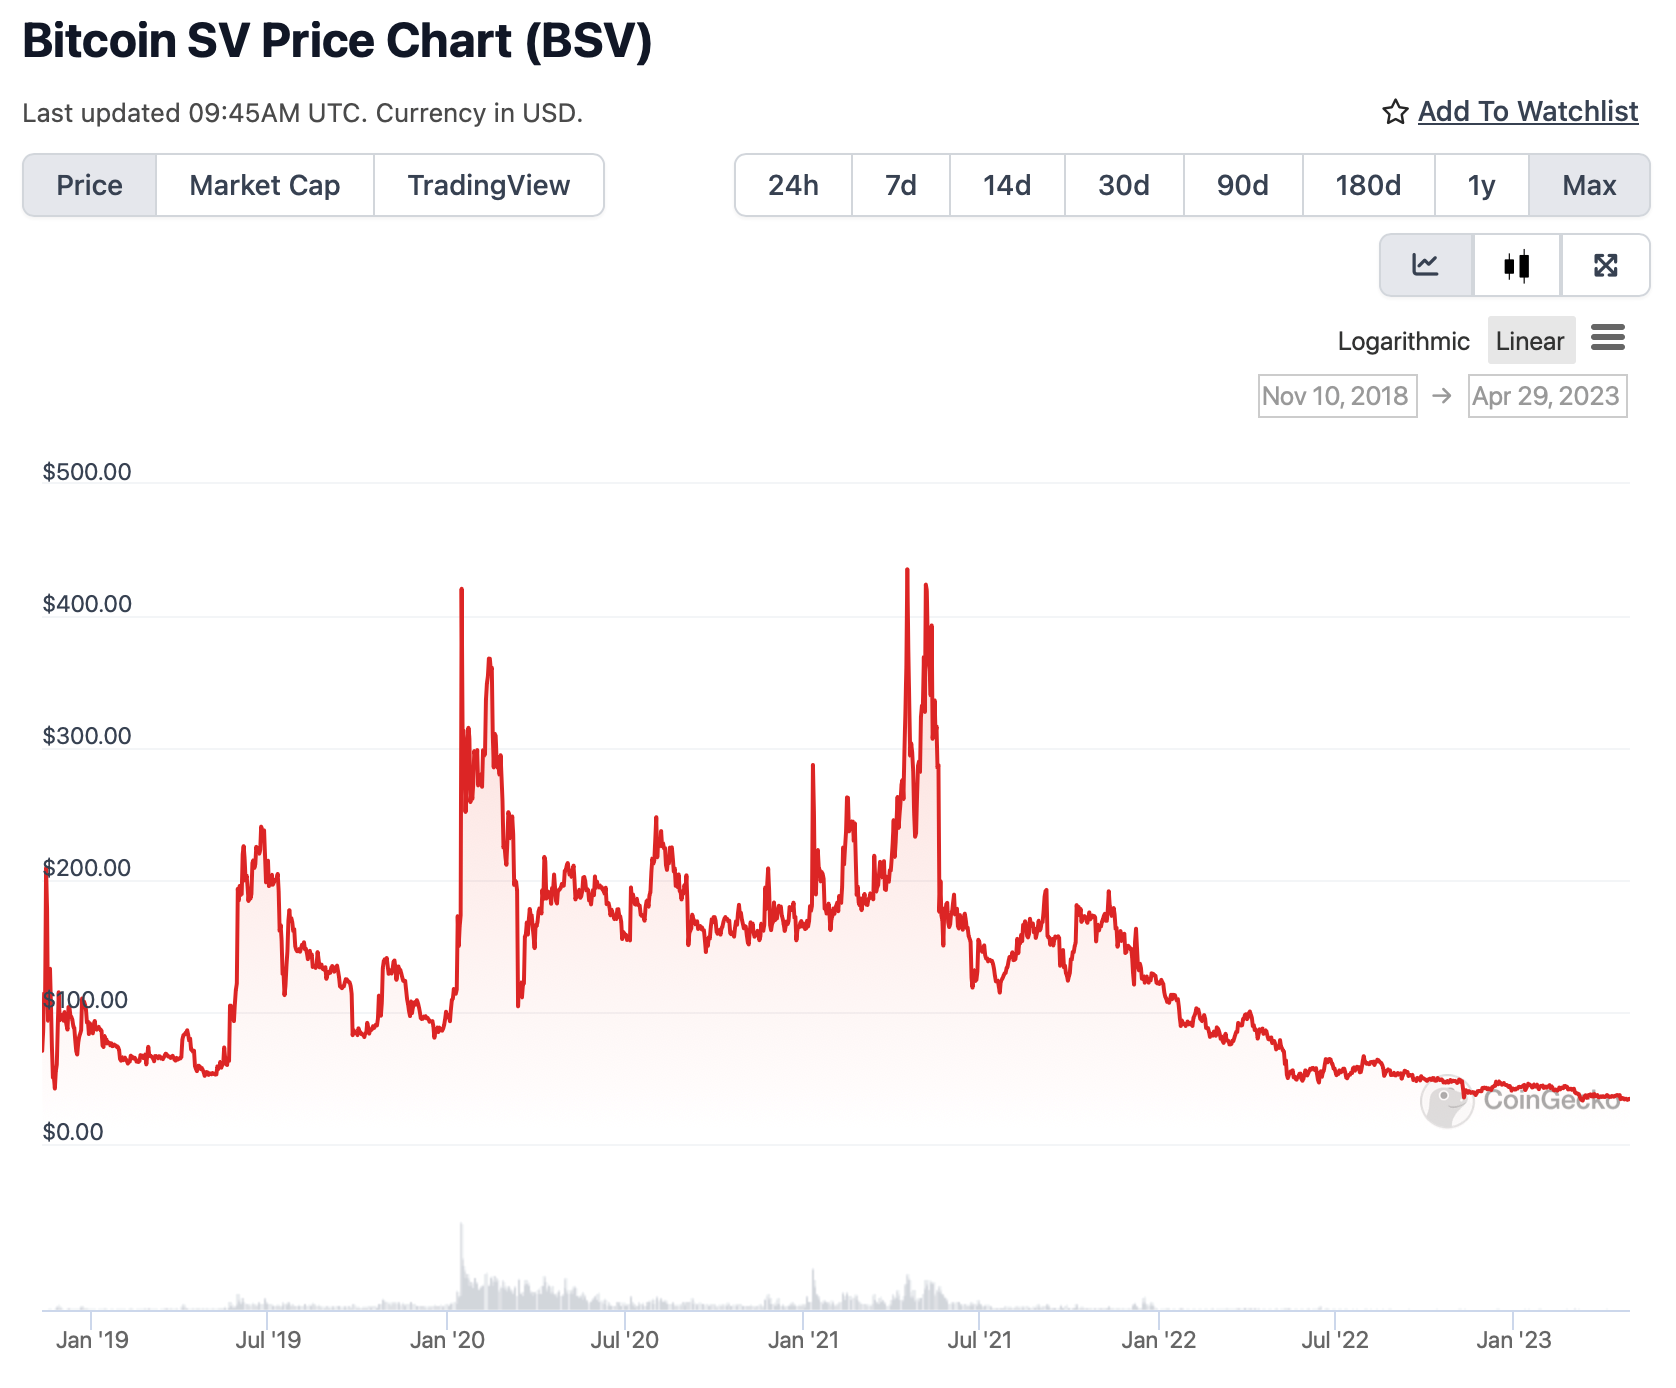 Bitcoin SV (BSV) Price Chart